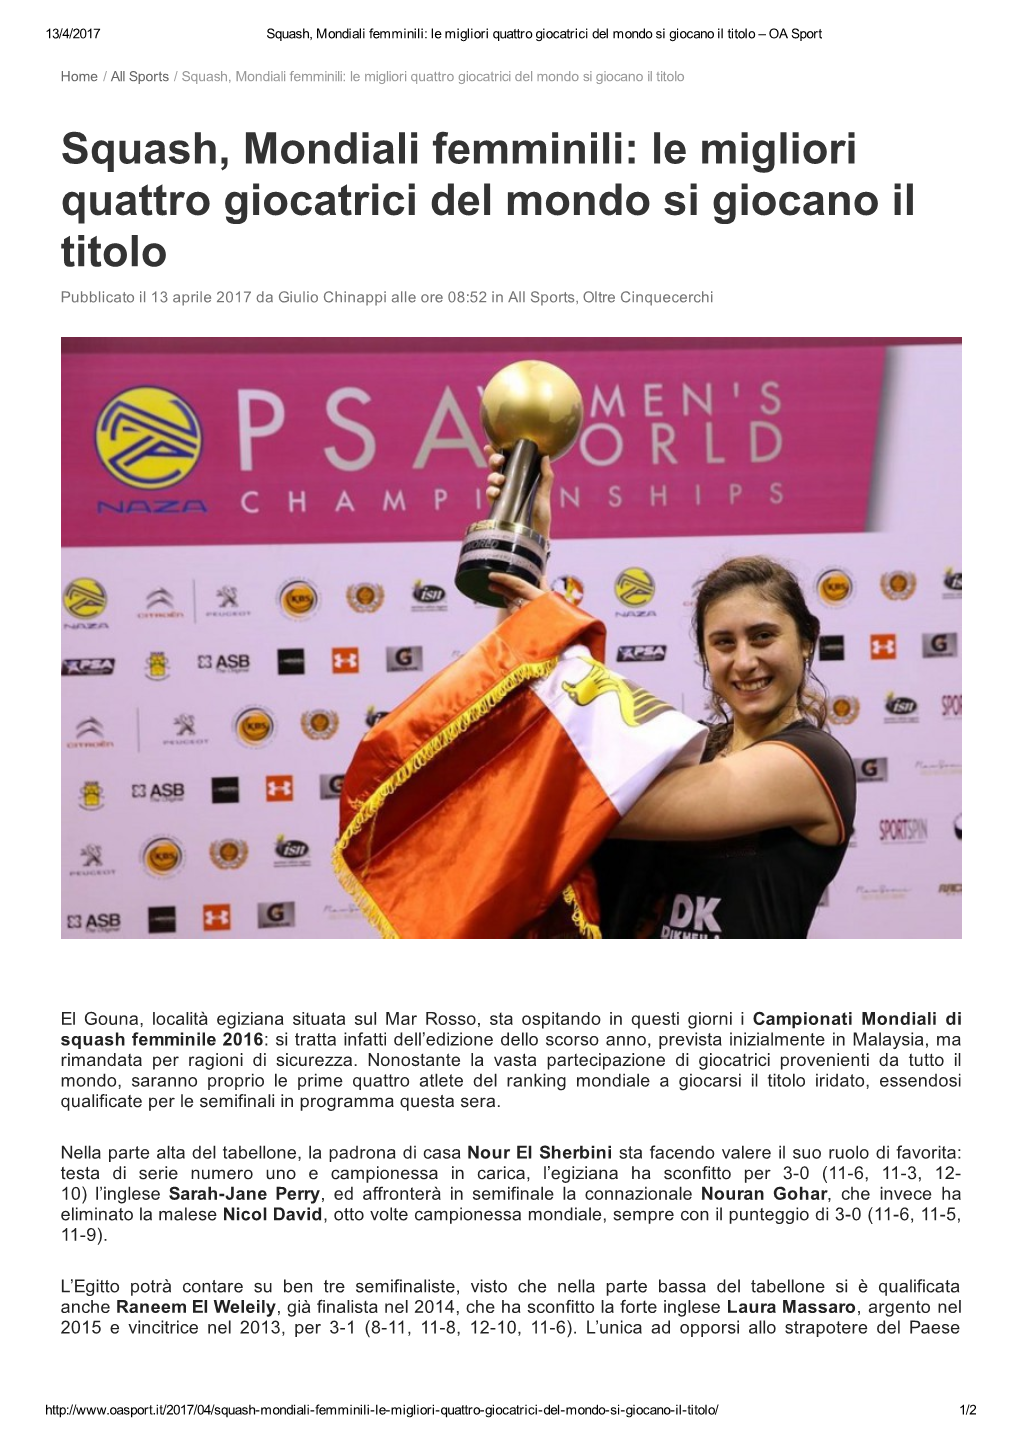 Squash, Mondiali Femminili: Le Migliori Quattro Giocatrici Del Mondo Si Giocano Il Titolo – OA Sport